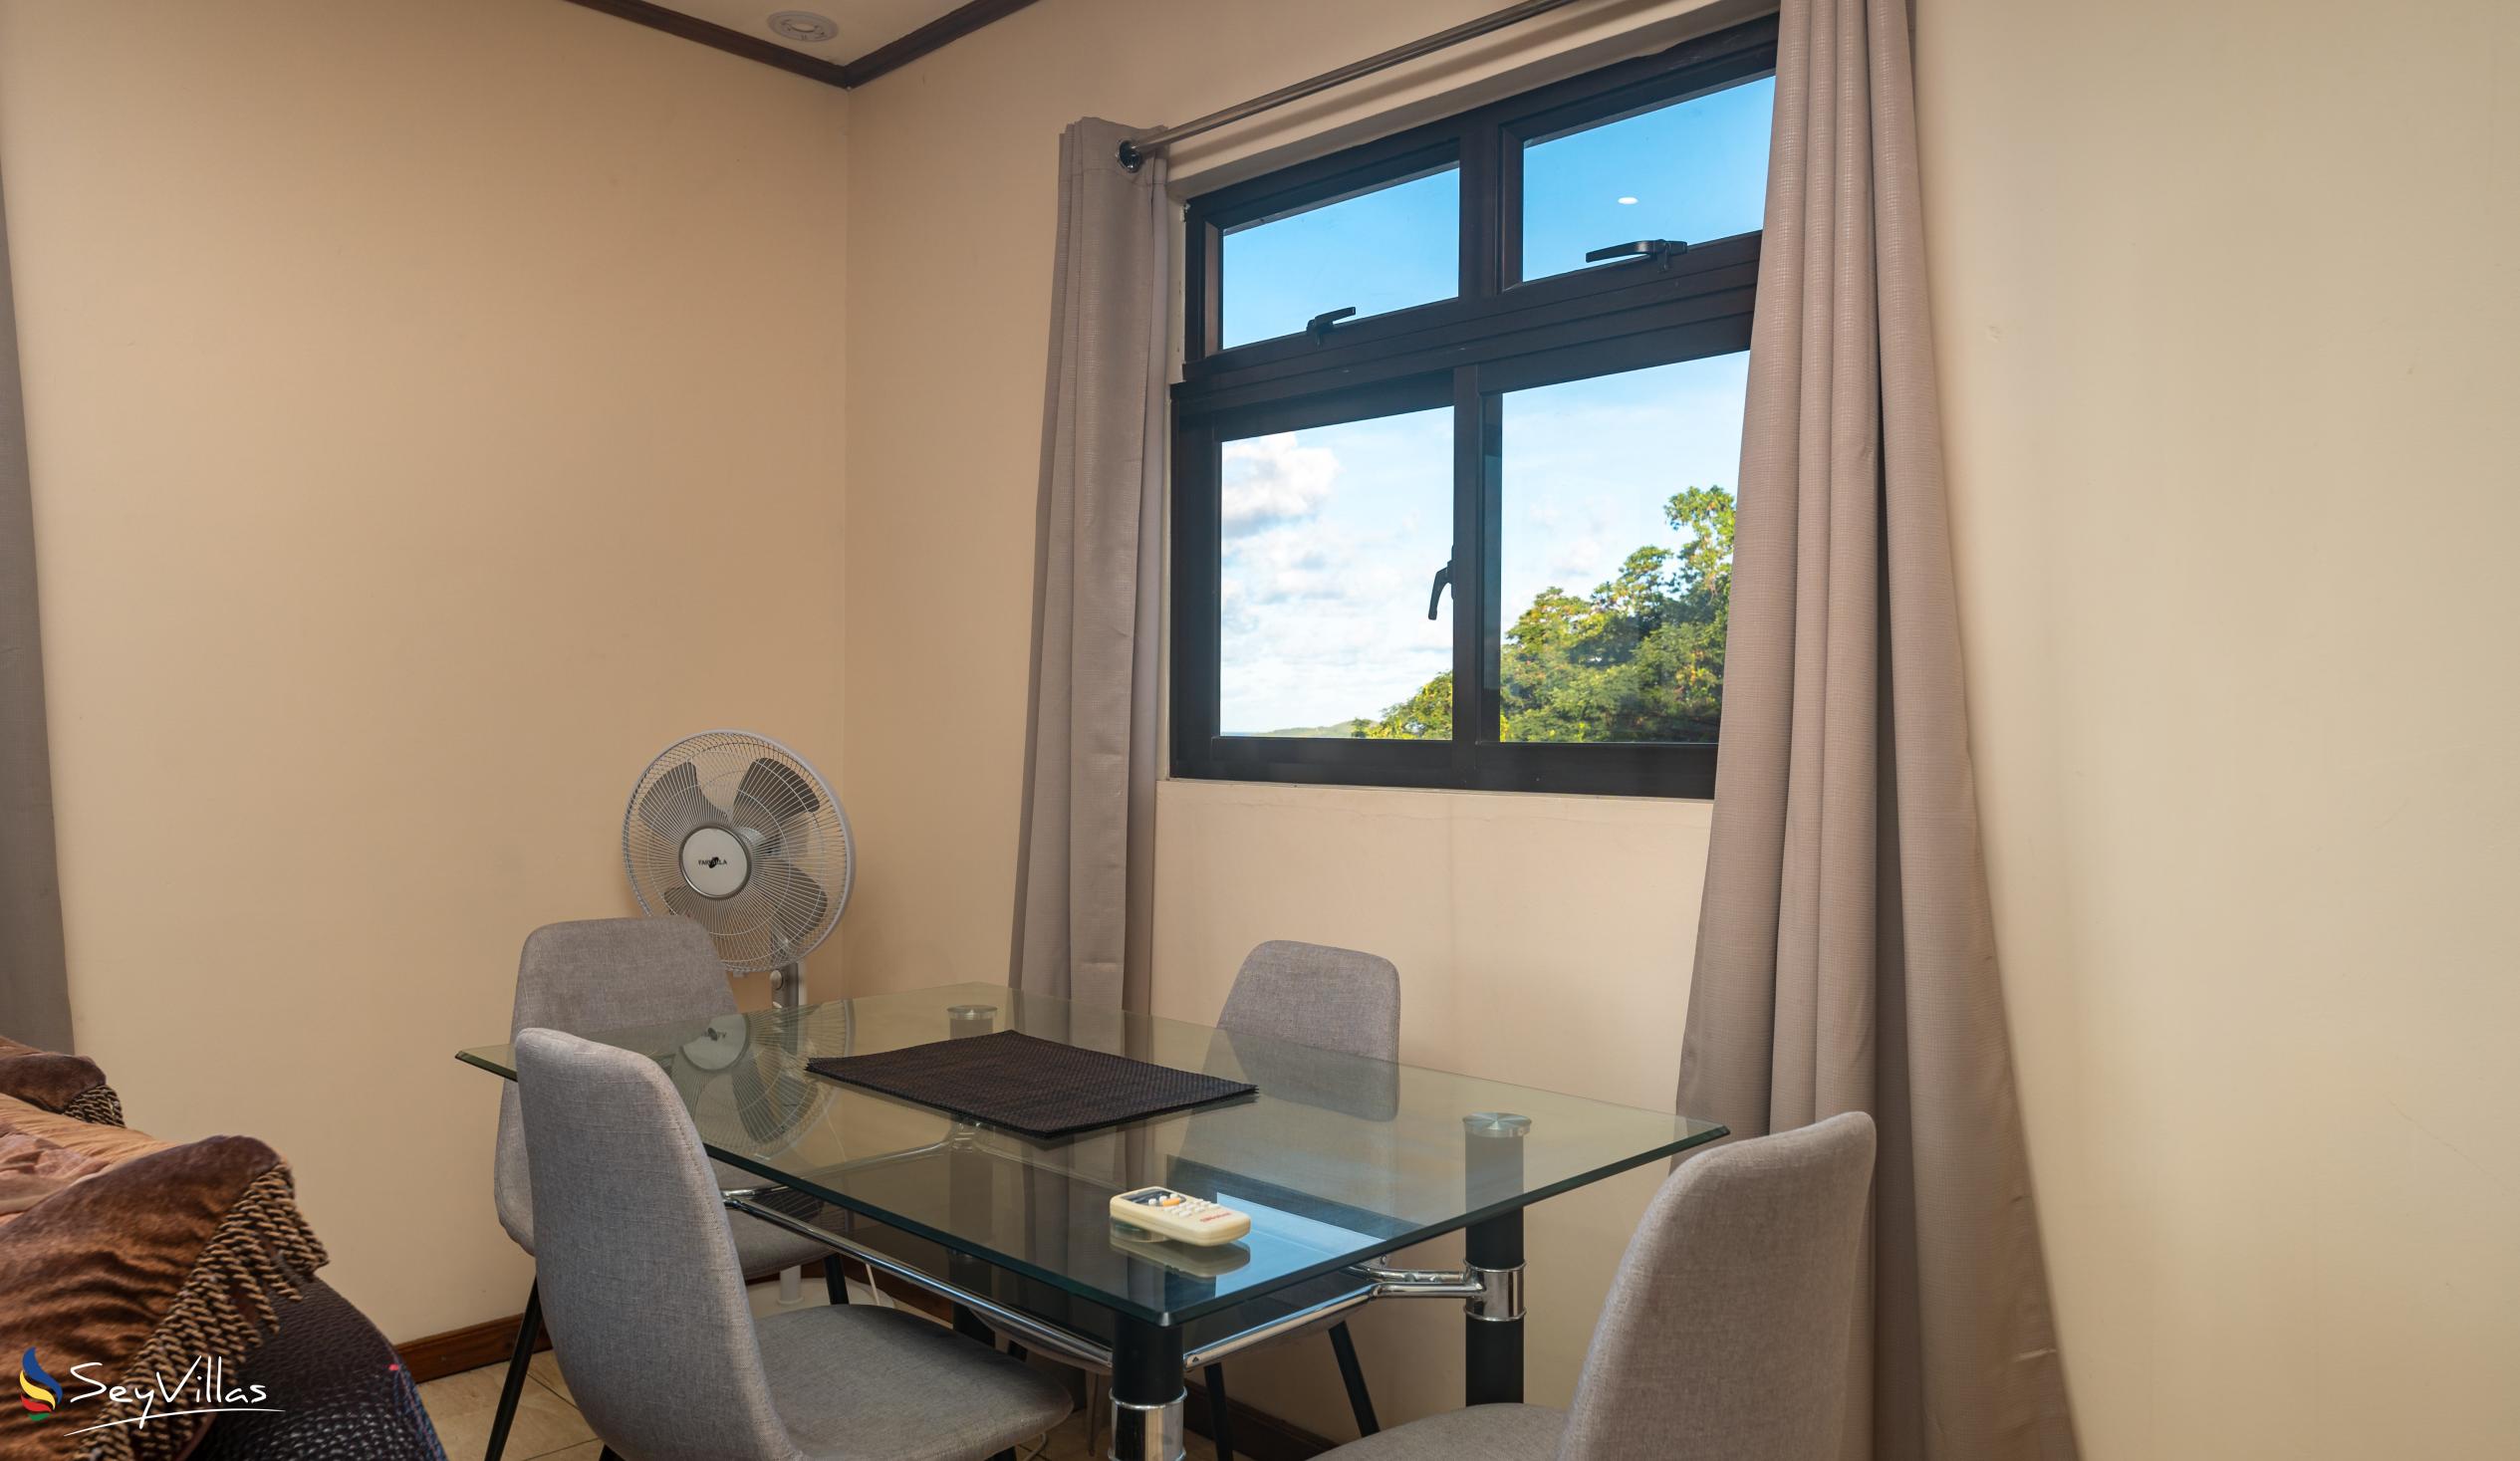 Foto 44: Maison L'Horizon - Appartement 2 chambres Soley - Mahé (Seychelles)